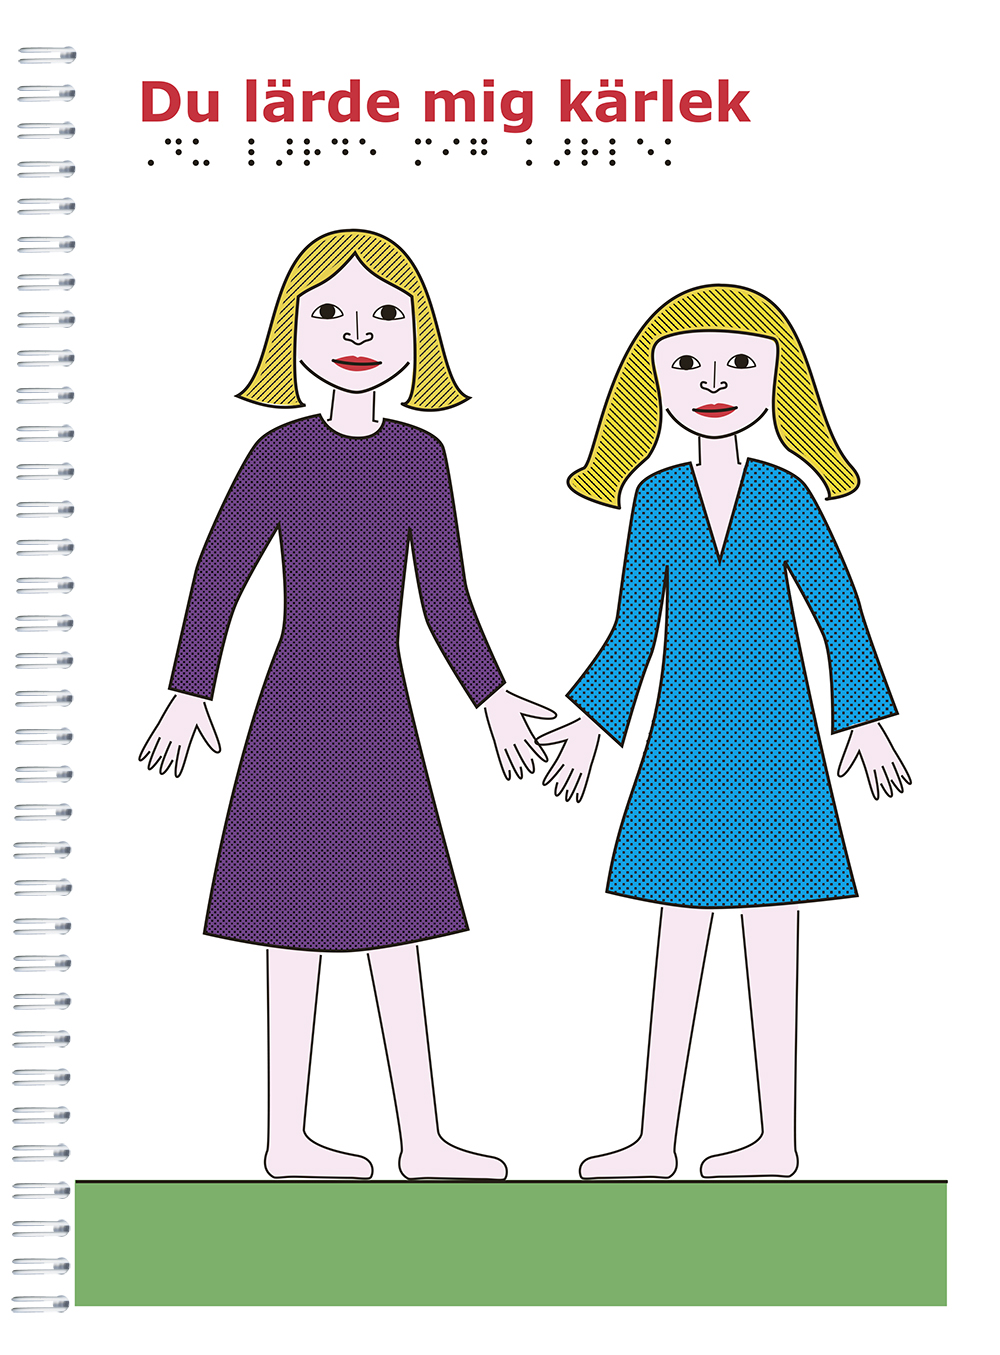 Två kvinnor, en i lila klänning och en i blå. De sträcker ut händerna som för att ta varandra hand i hand.